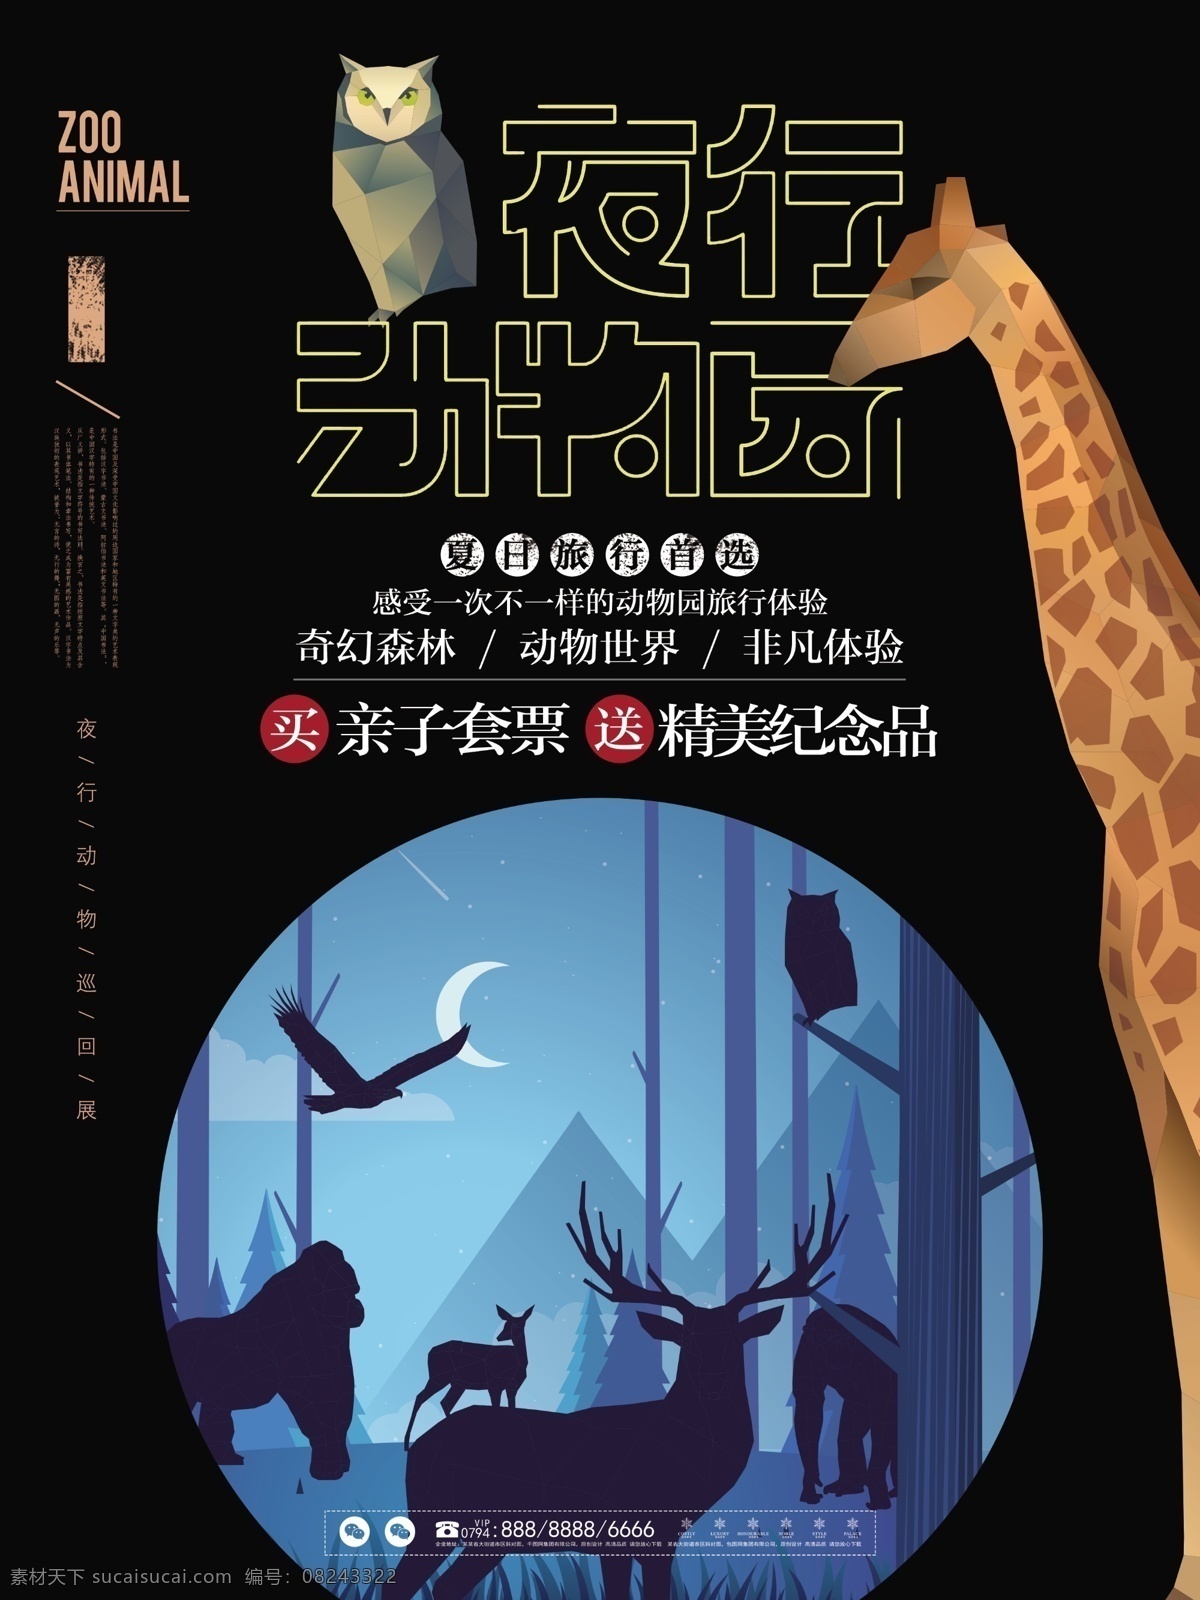 夜行 动物园 简约 简洁 旅行 宣传 促销 海报 动物 旅游 展板 野生动物 暑假 暑期